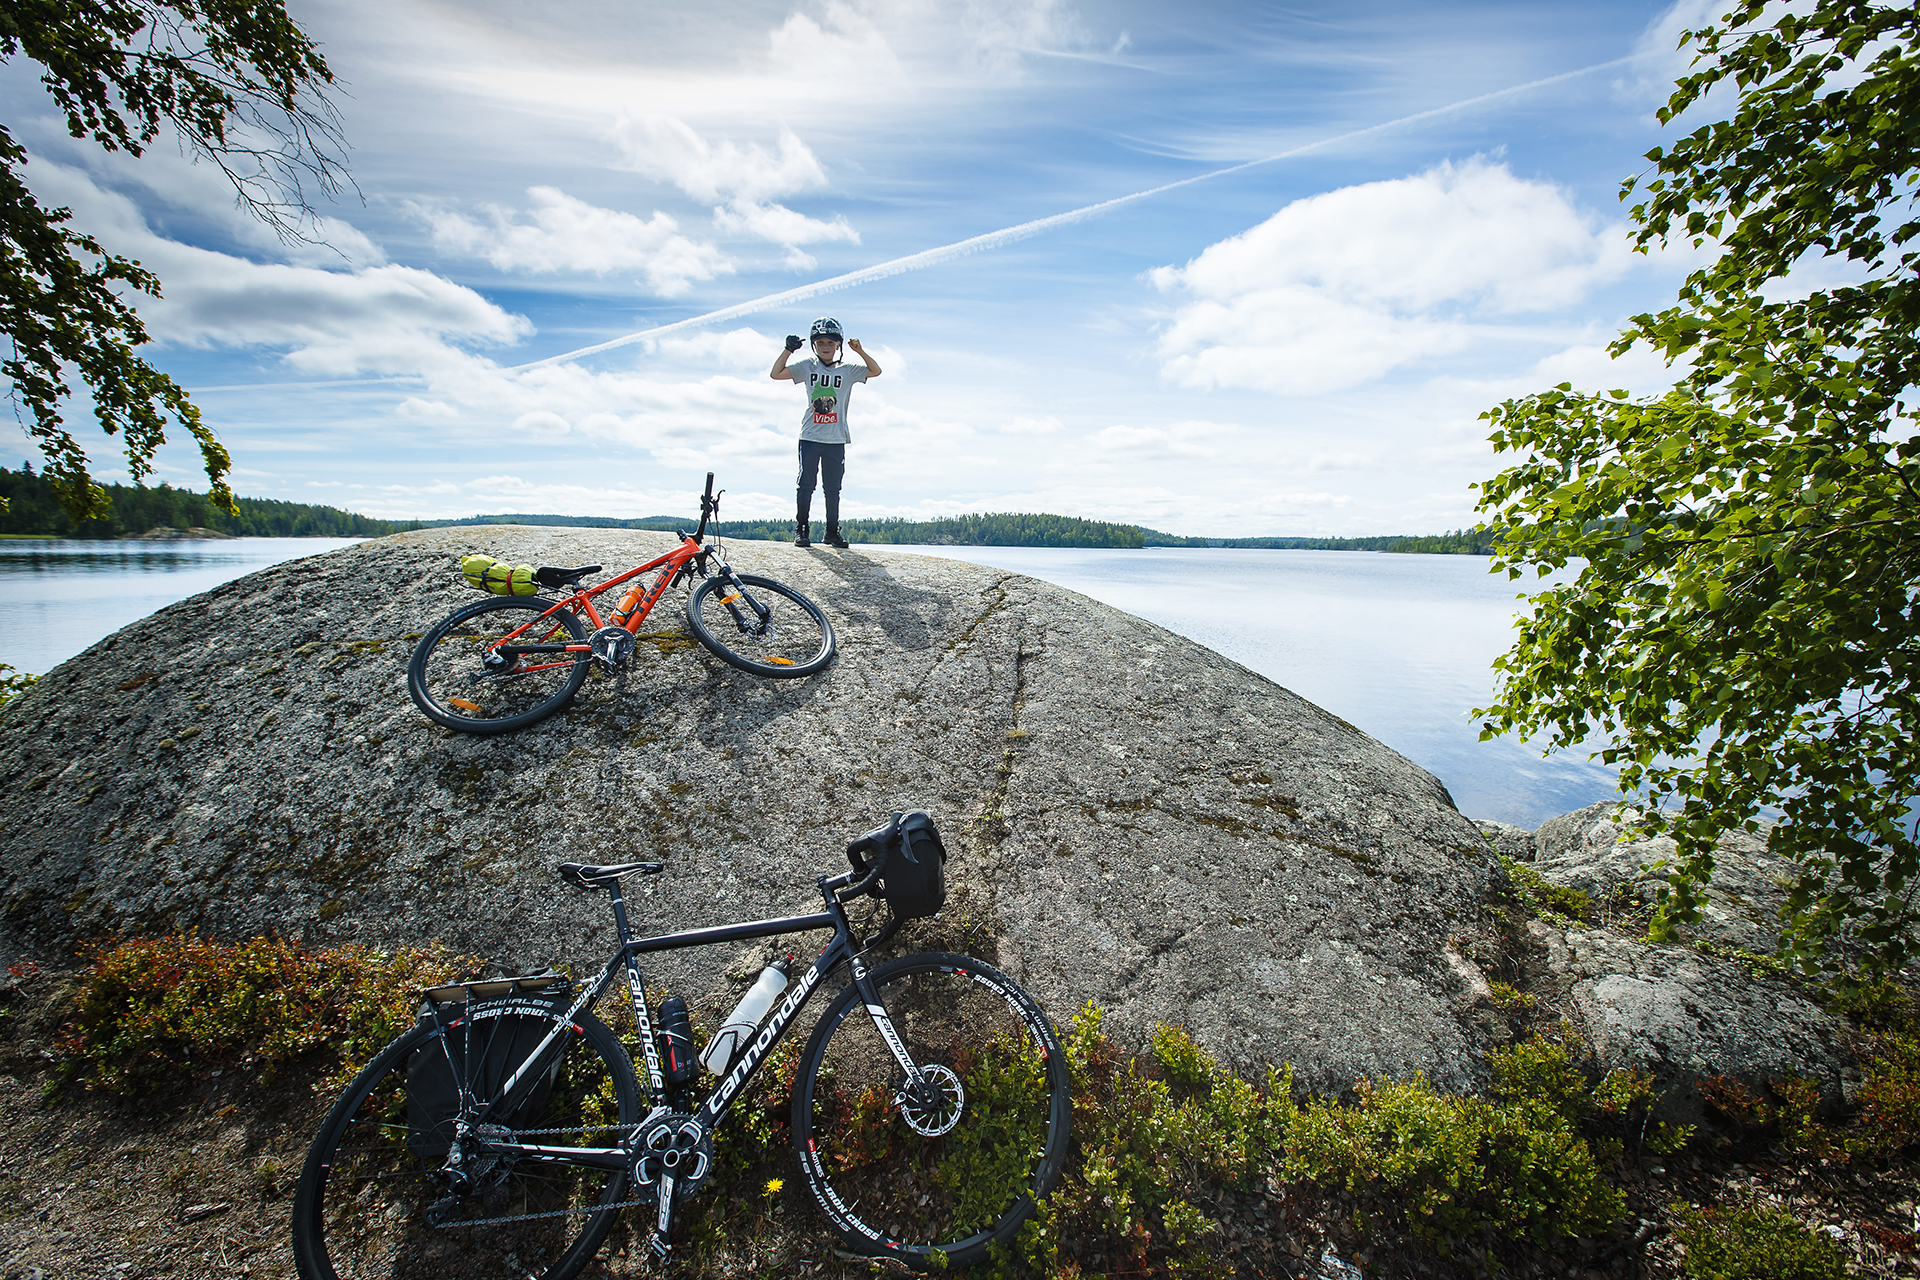 Finnland ist ein Paradies für Radfahrer – onroad und offroad